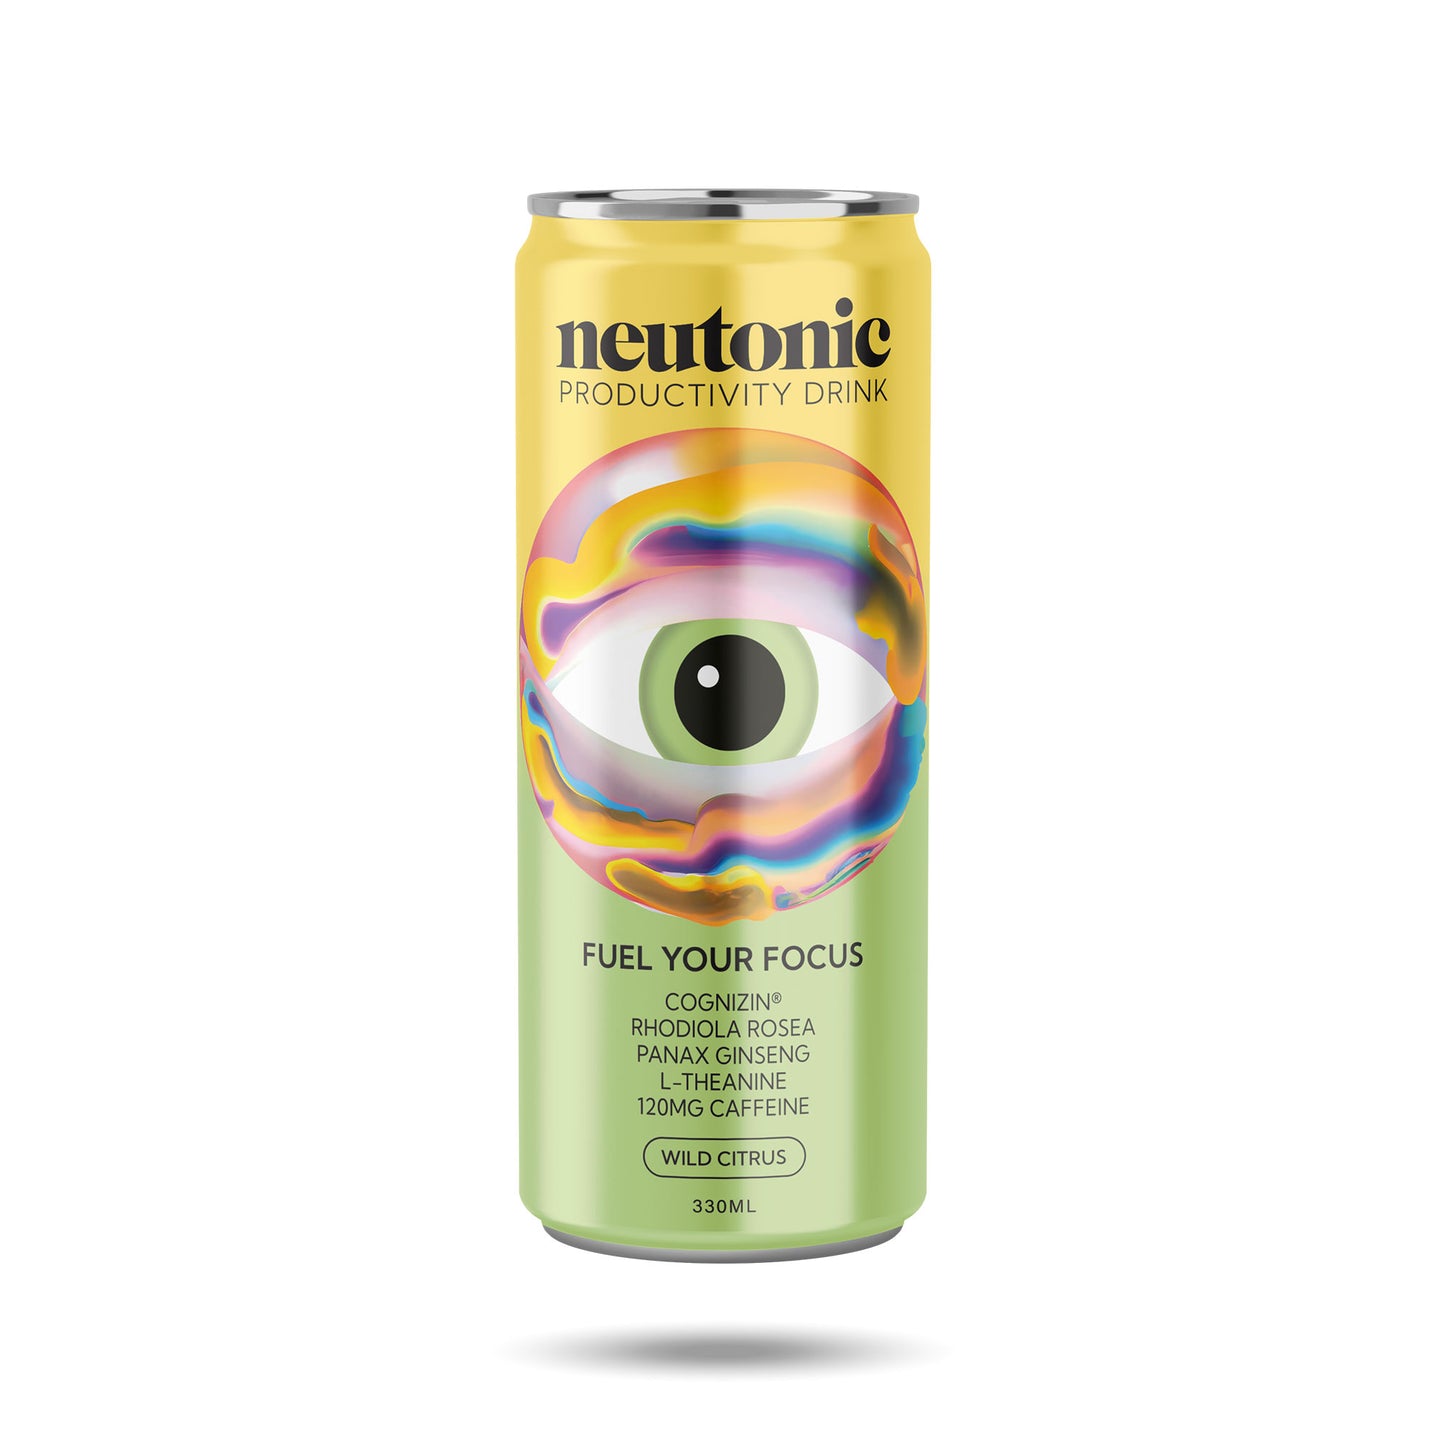 Neutonic - Product image front